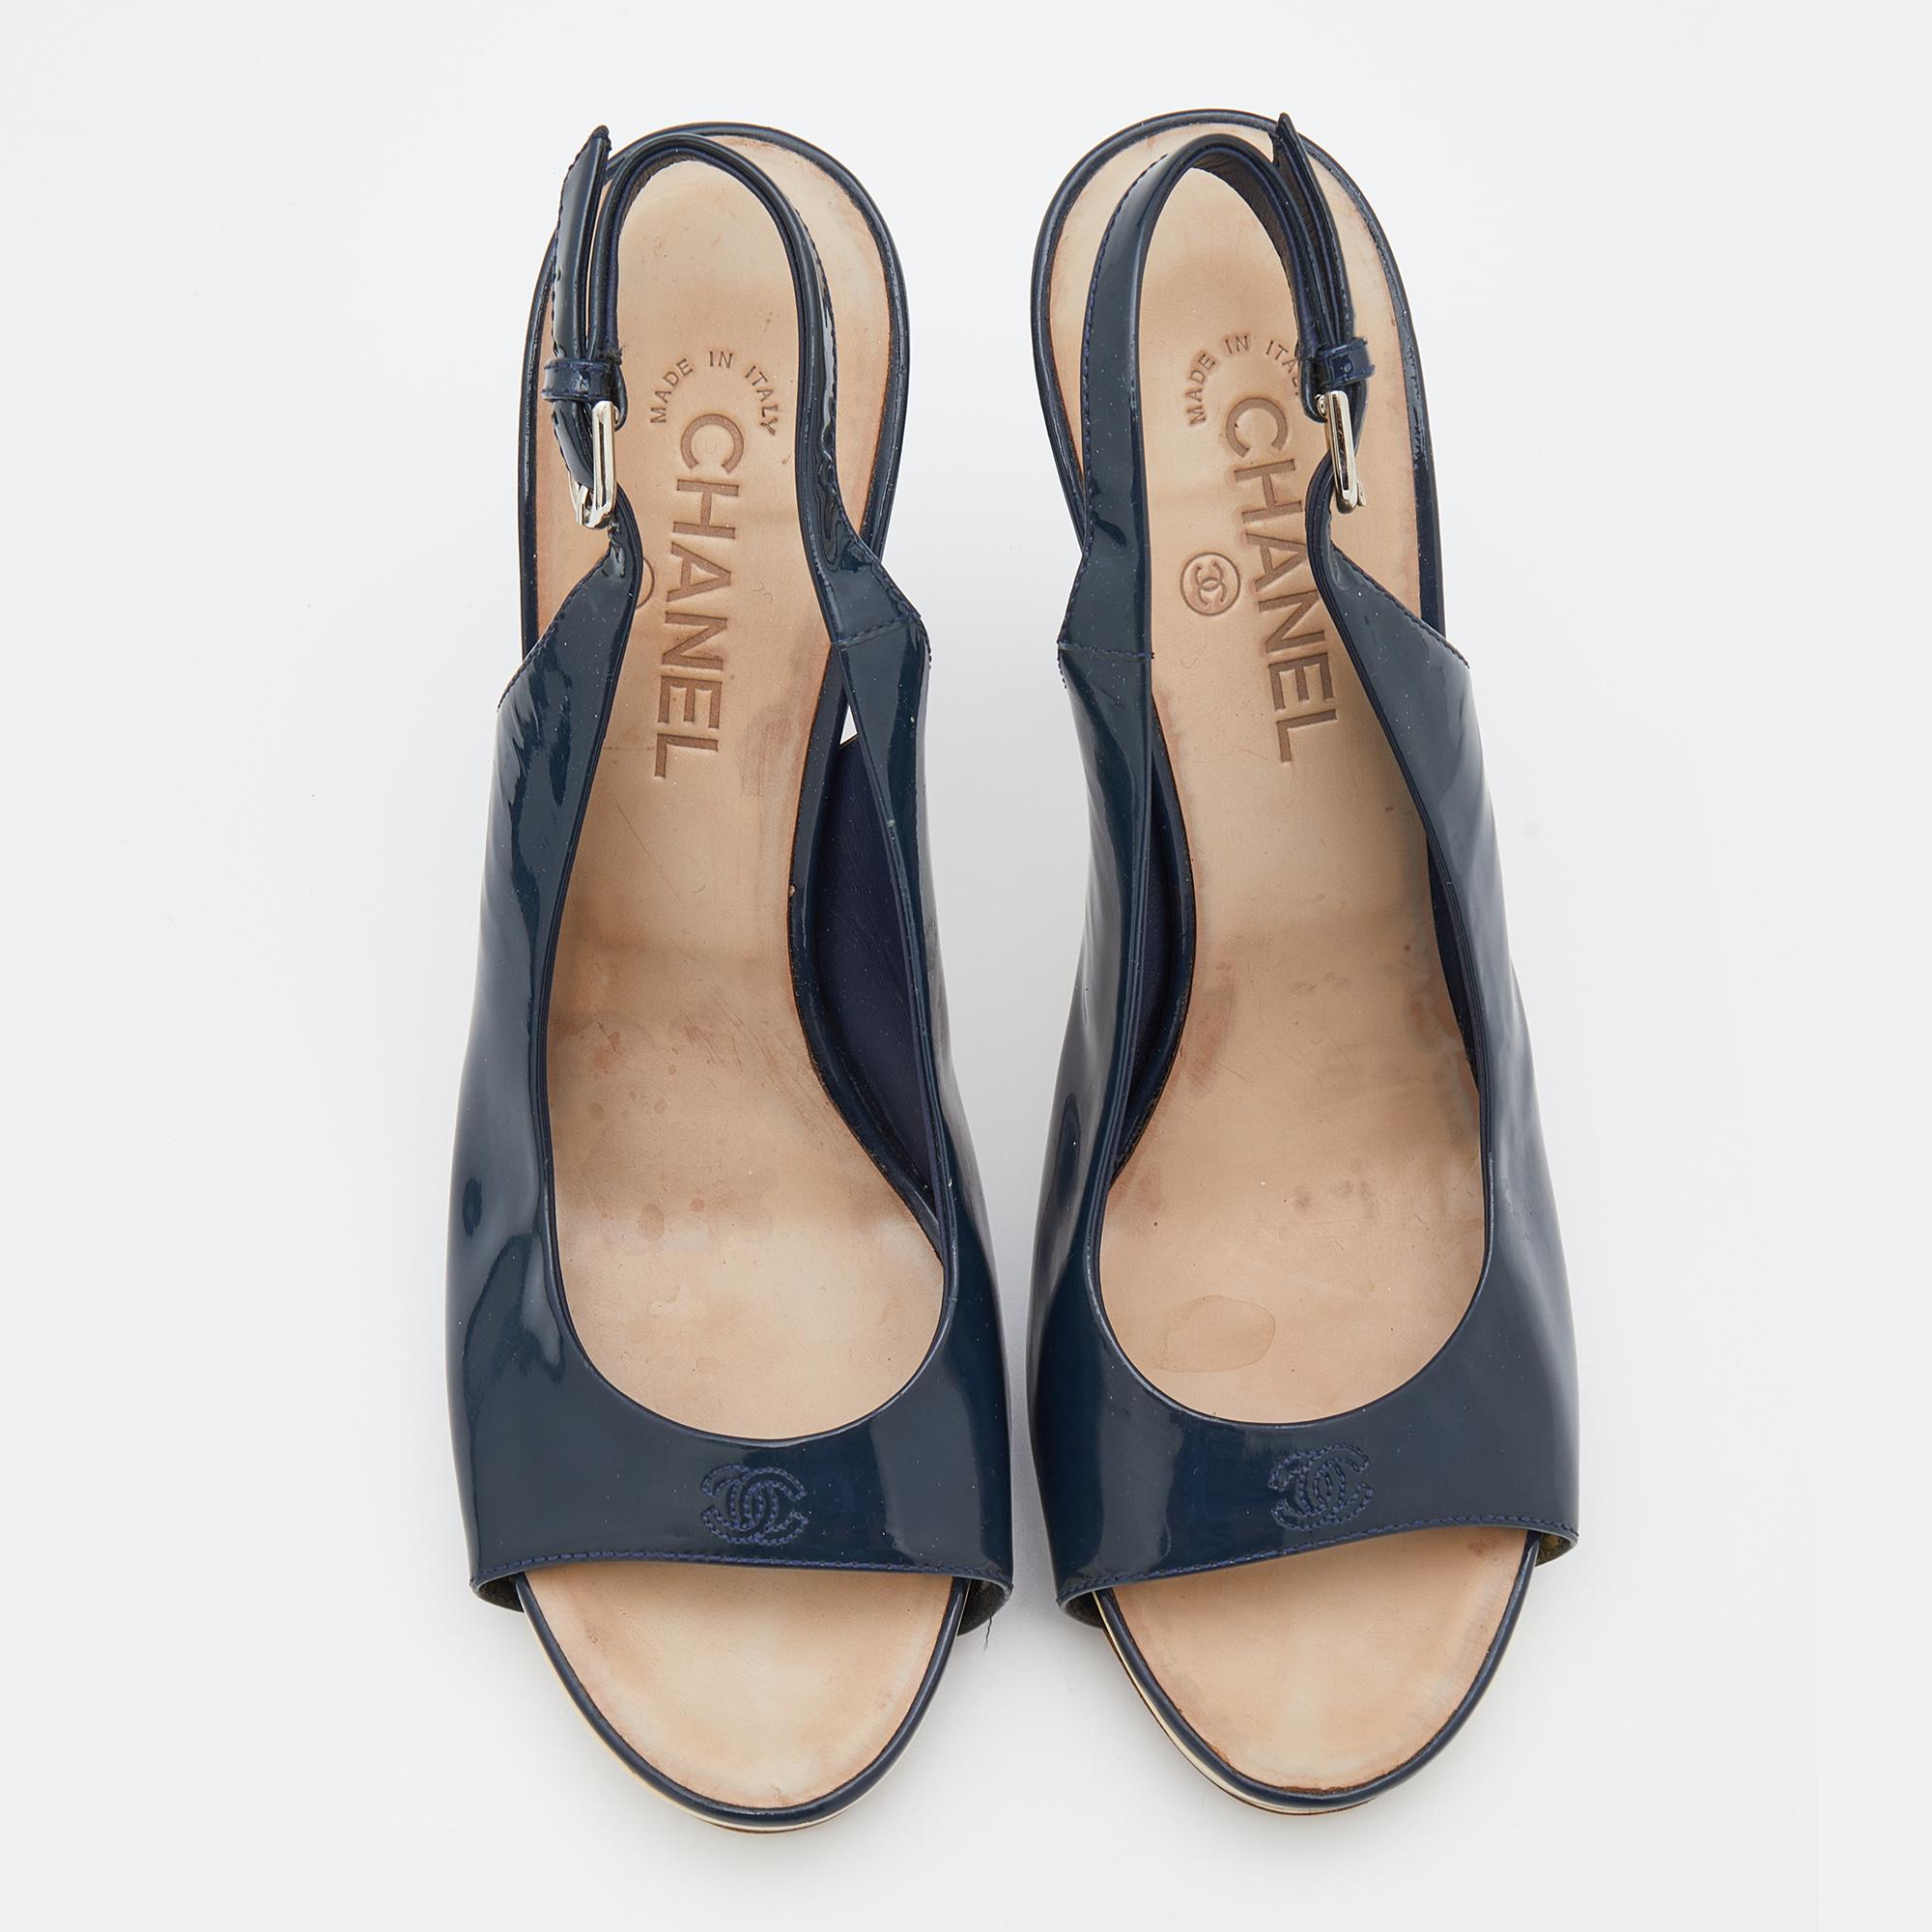 Alliant confort et élégance, ces sandales Chanel à boucle et bride sont indispensables à votre garde-robe. Réalisé en cuir verni bleu marine, ce modèle à bout ouvert est doté d'une plateforme. Les escarpins sont dotés d'une semelle intérieure qui